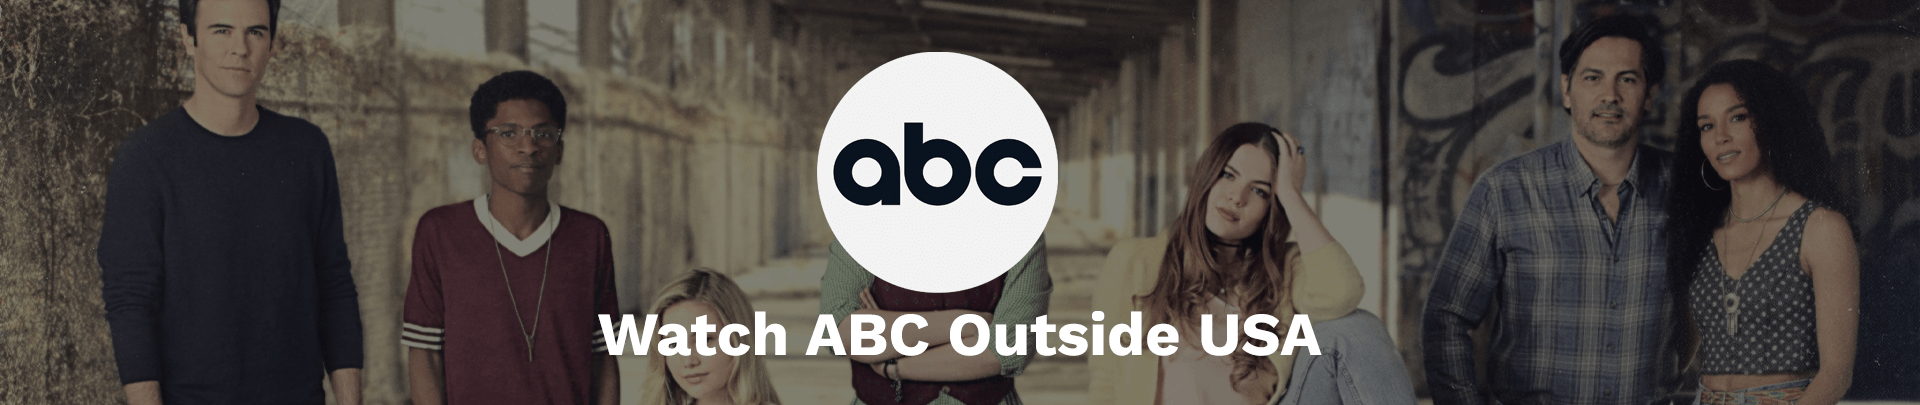 Watch ABC Outside USA